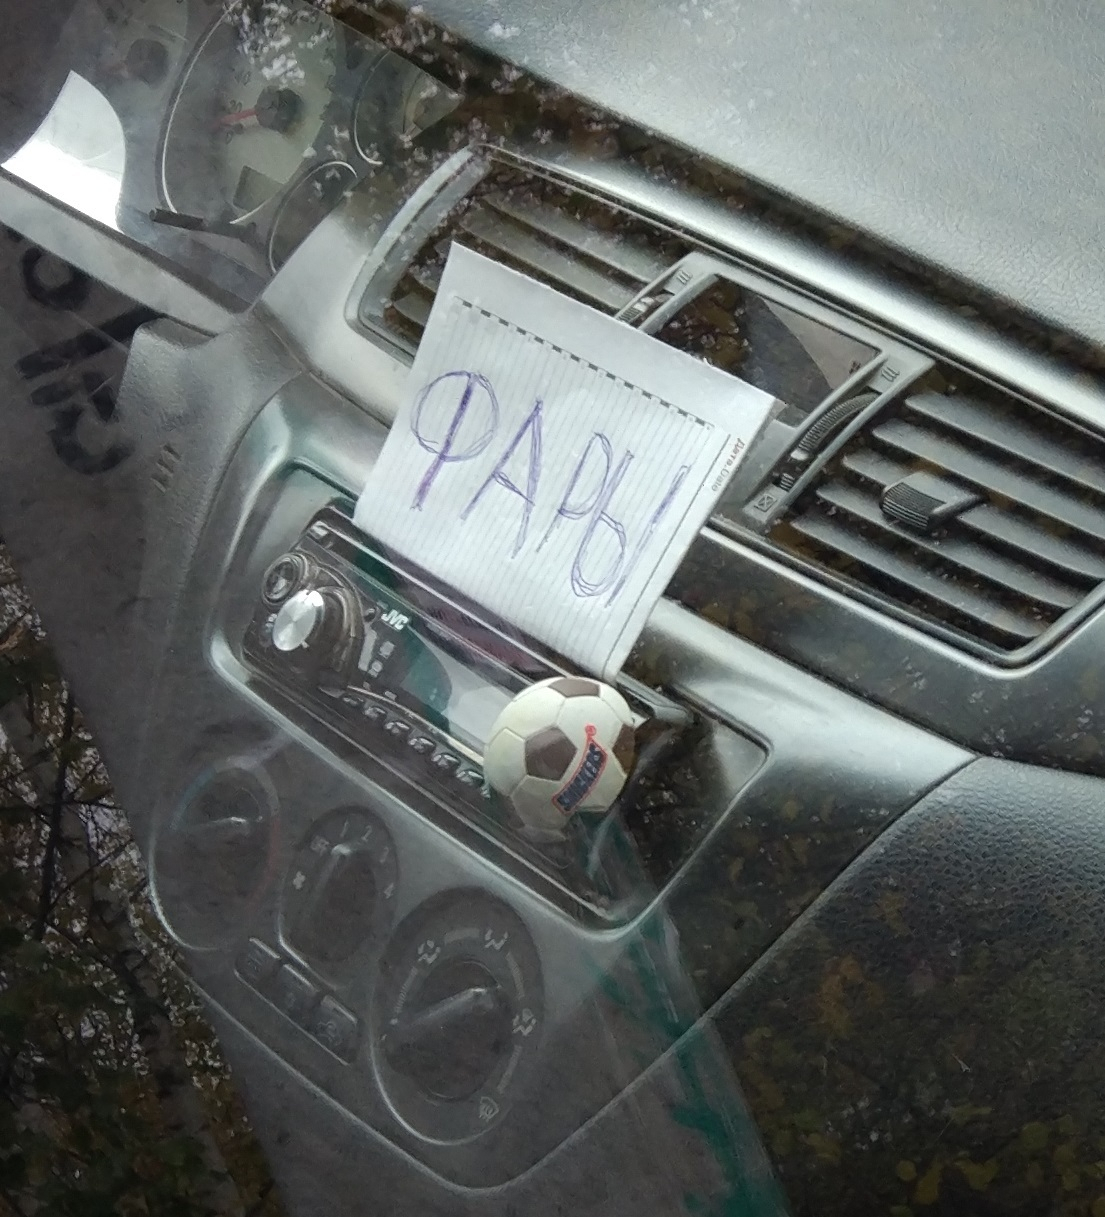 Над автоледи из Сыктывкара смеется вся Россия (фото)